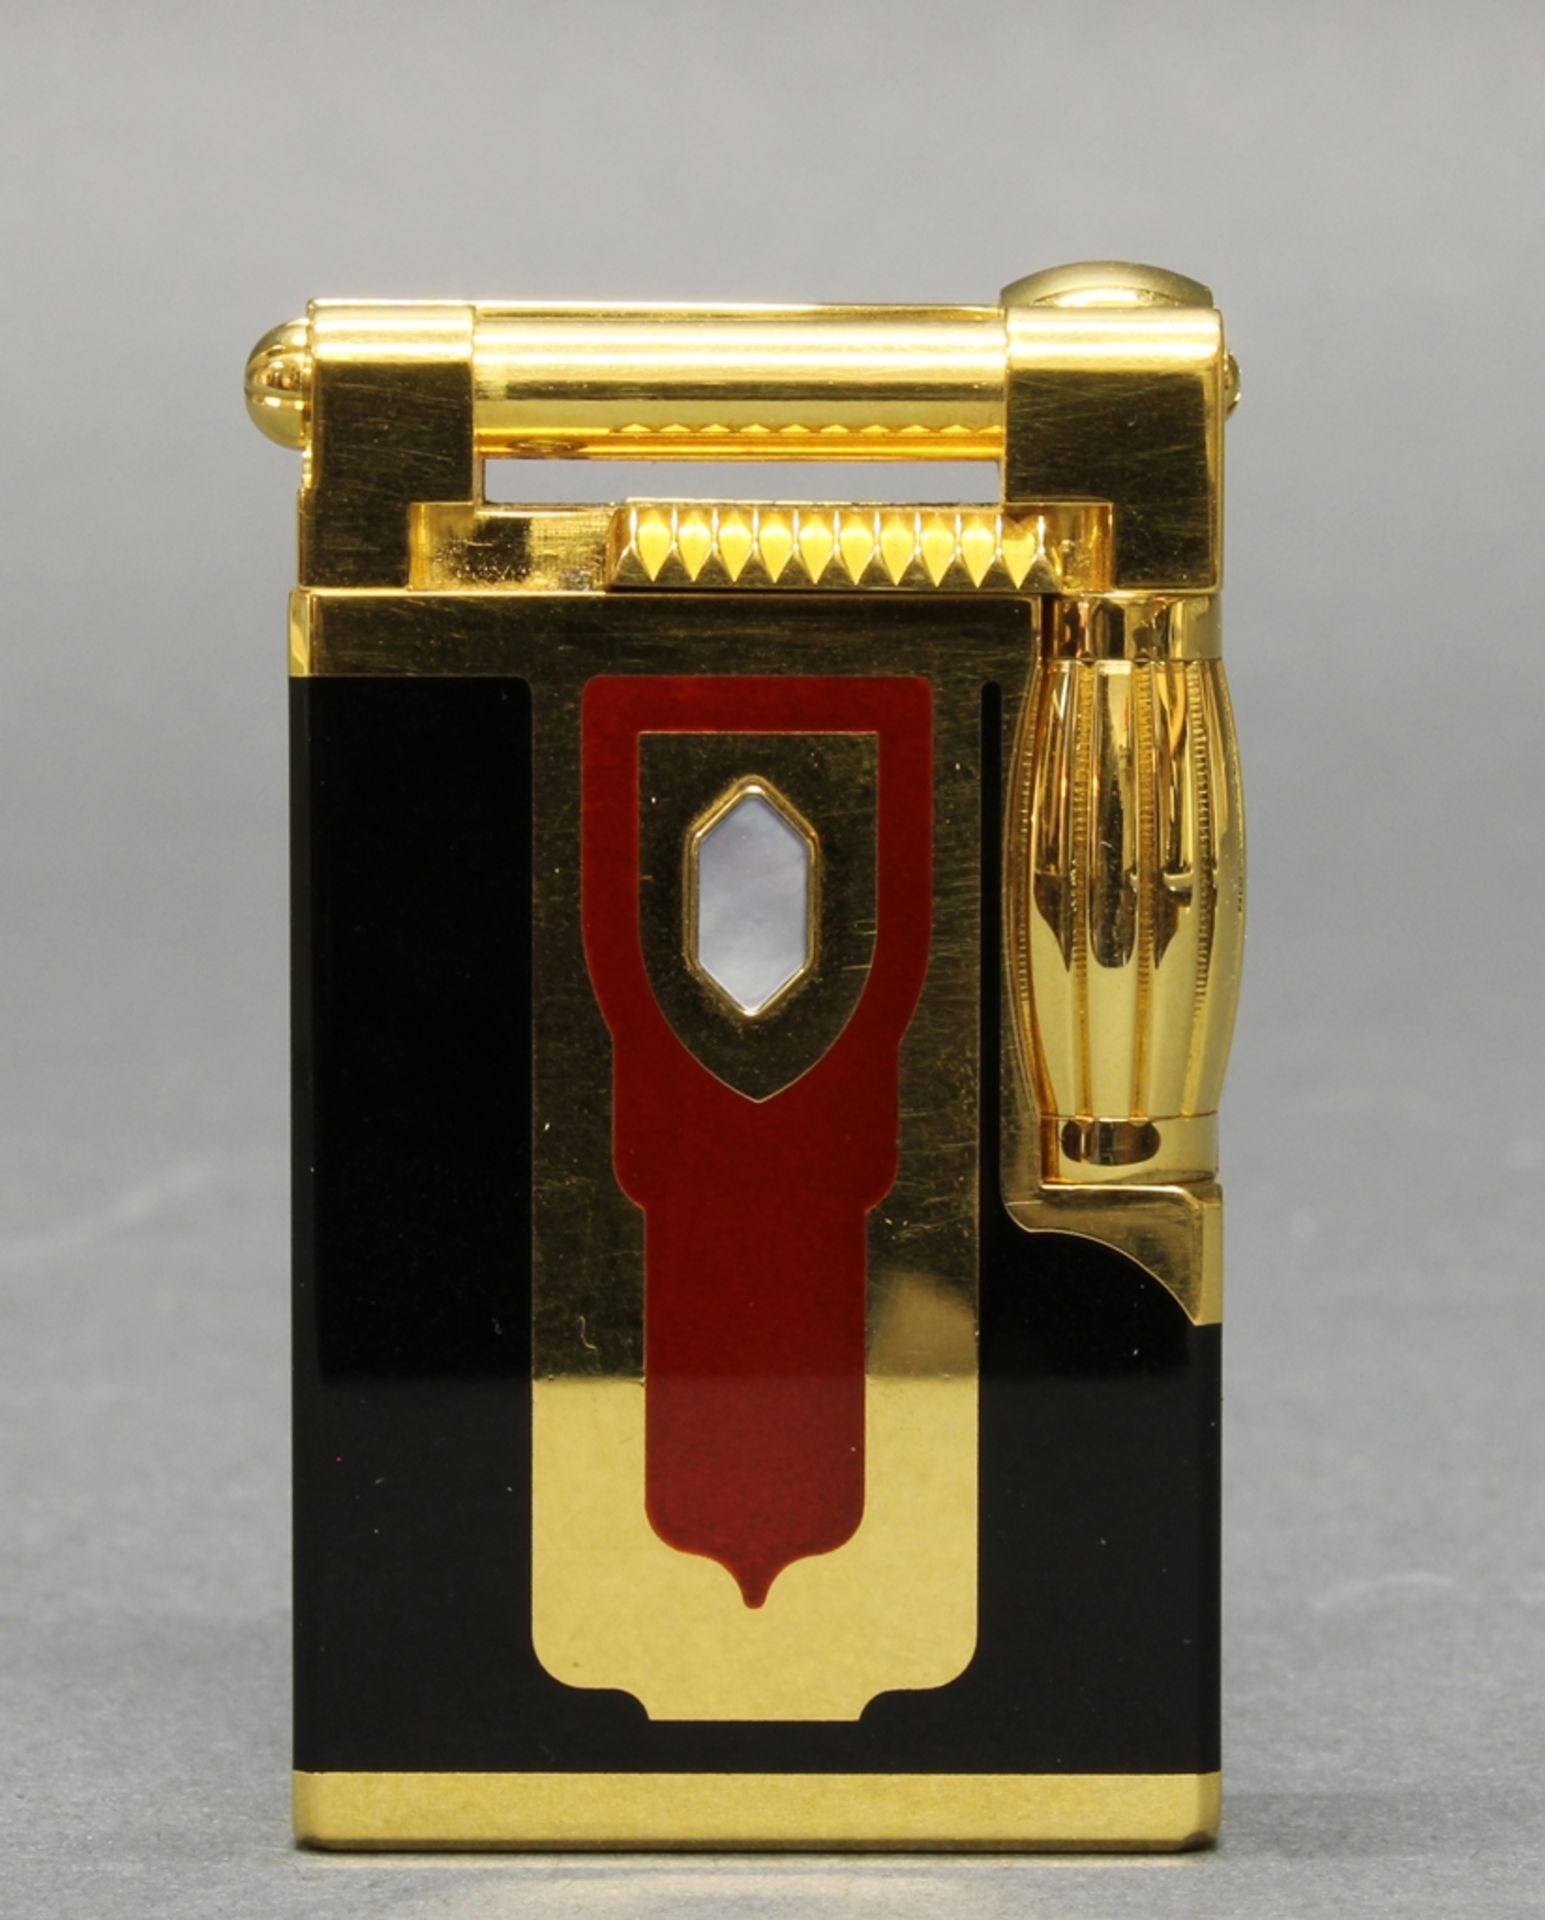 Feuerzeug, "Maharadjah", Dupont Nachbildung, bez. Rep 012, 6 cm hoch, in Kassette, Funktion ungeprü - Bild 2 aus 3